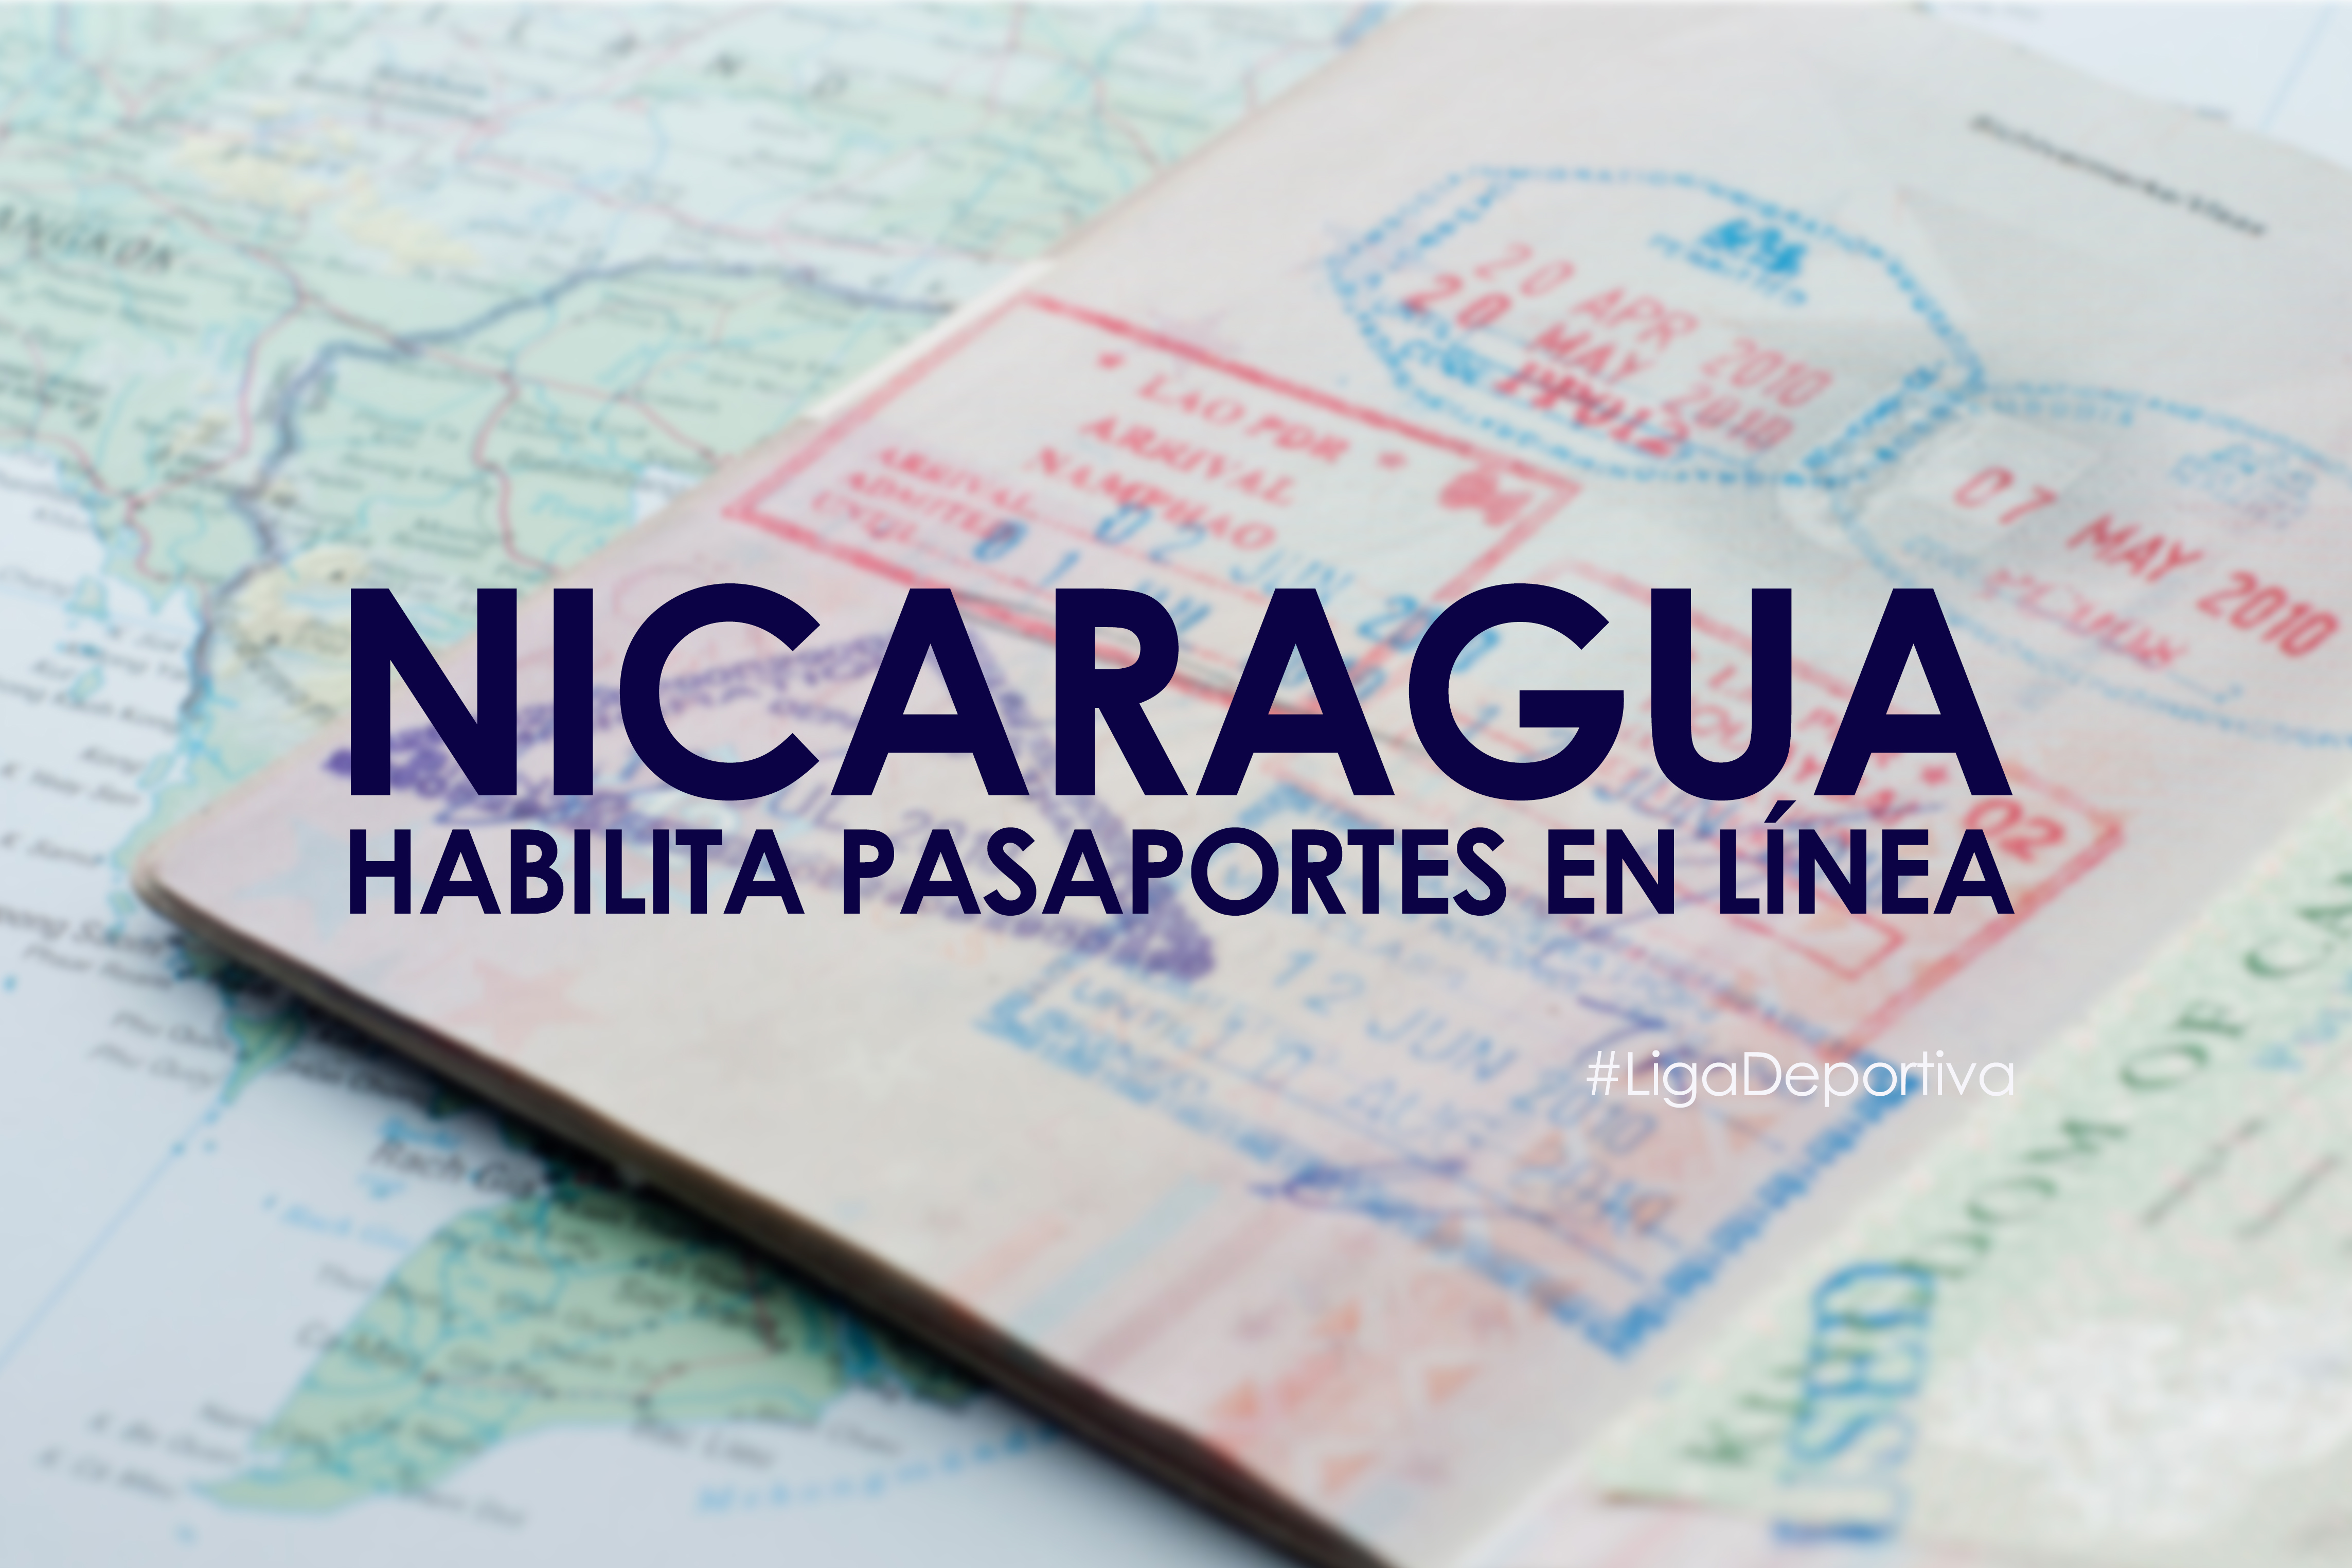 Pasaportes nicaragüenses se tramitarán en línea 